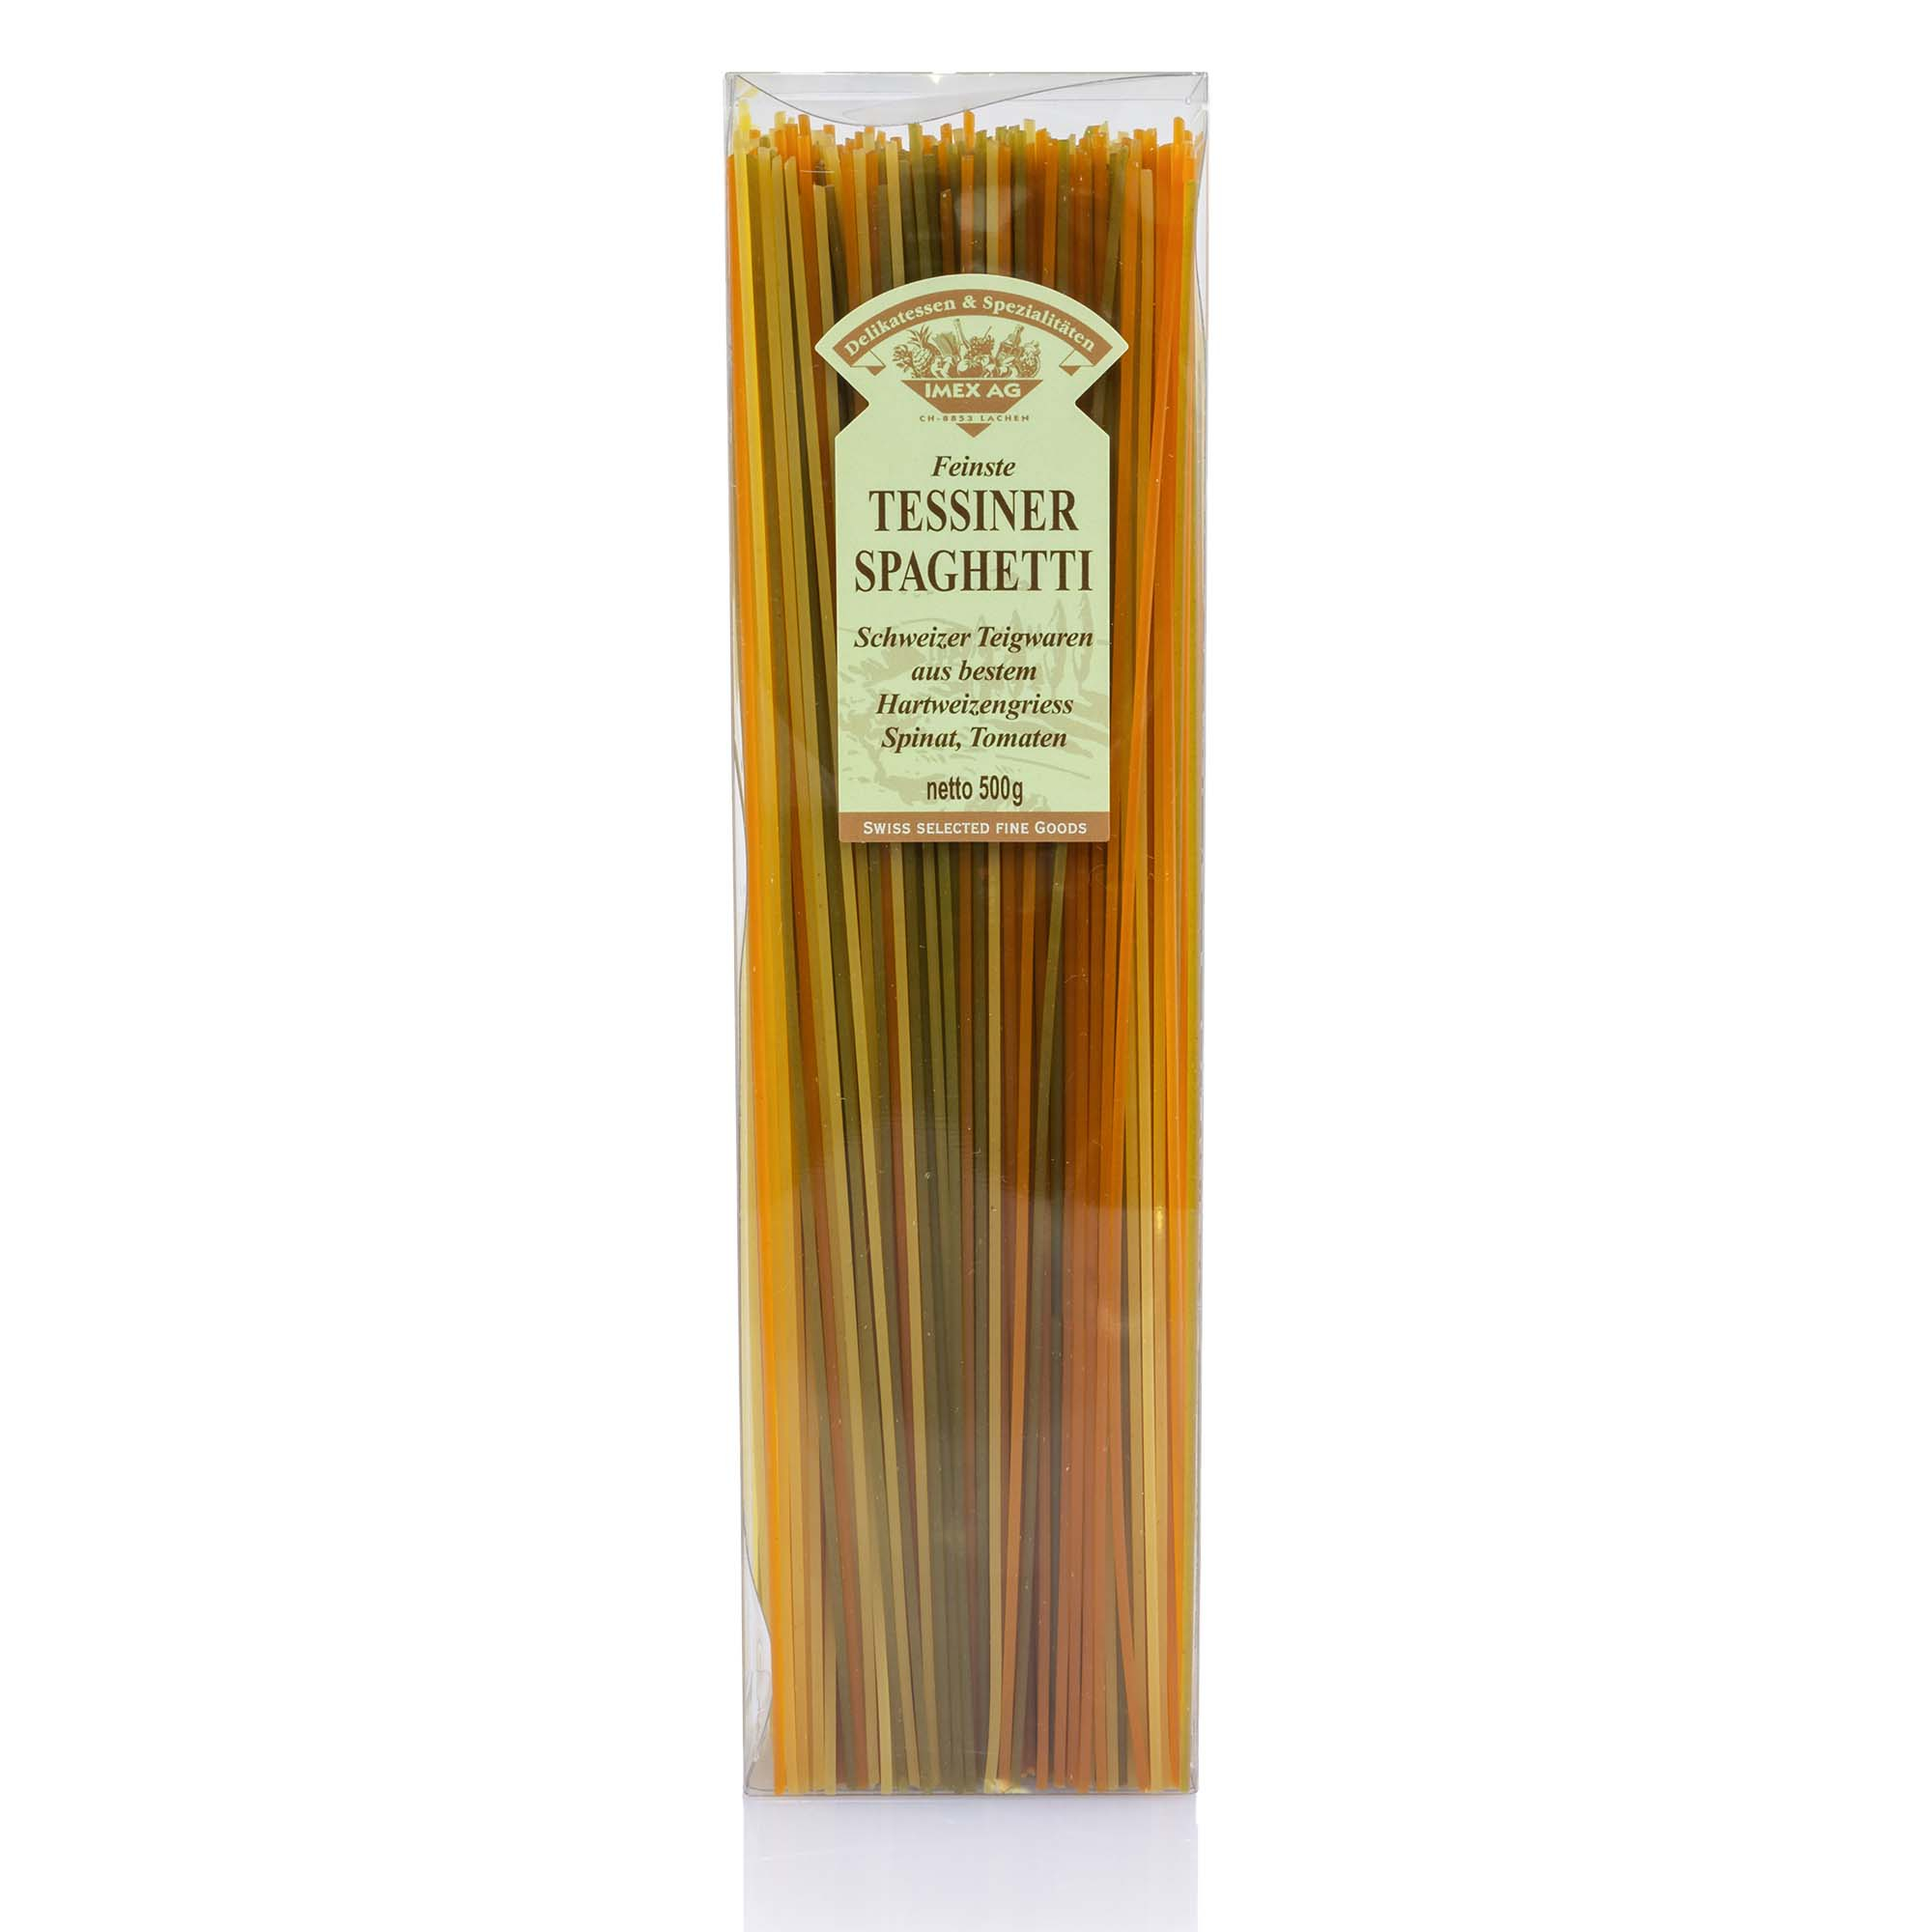 Tessiner Spaghetti Tricolore, 500g